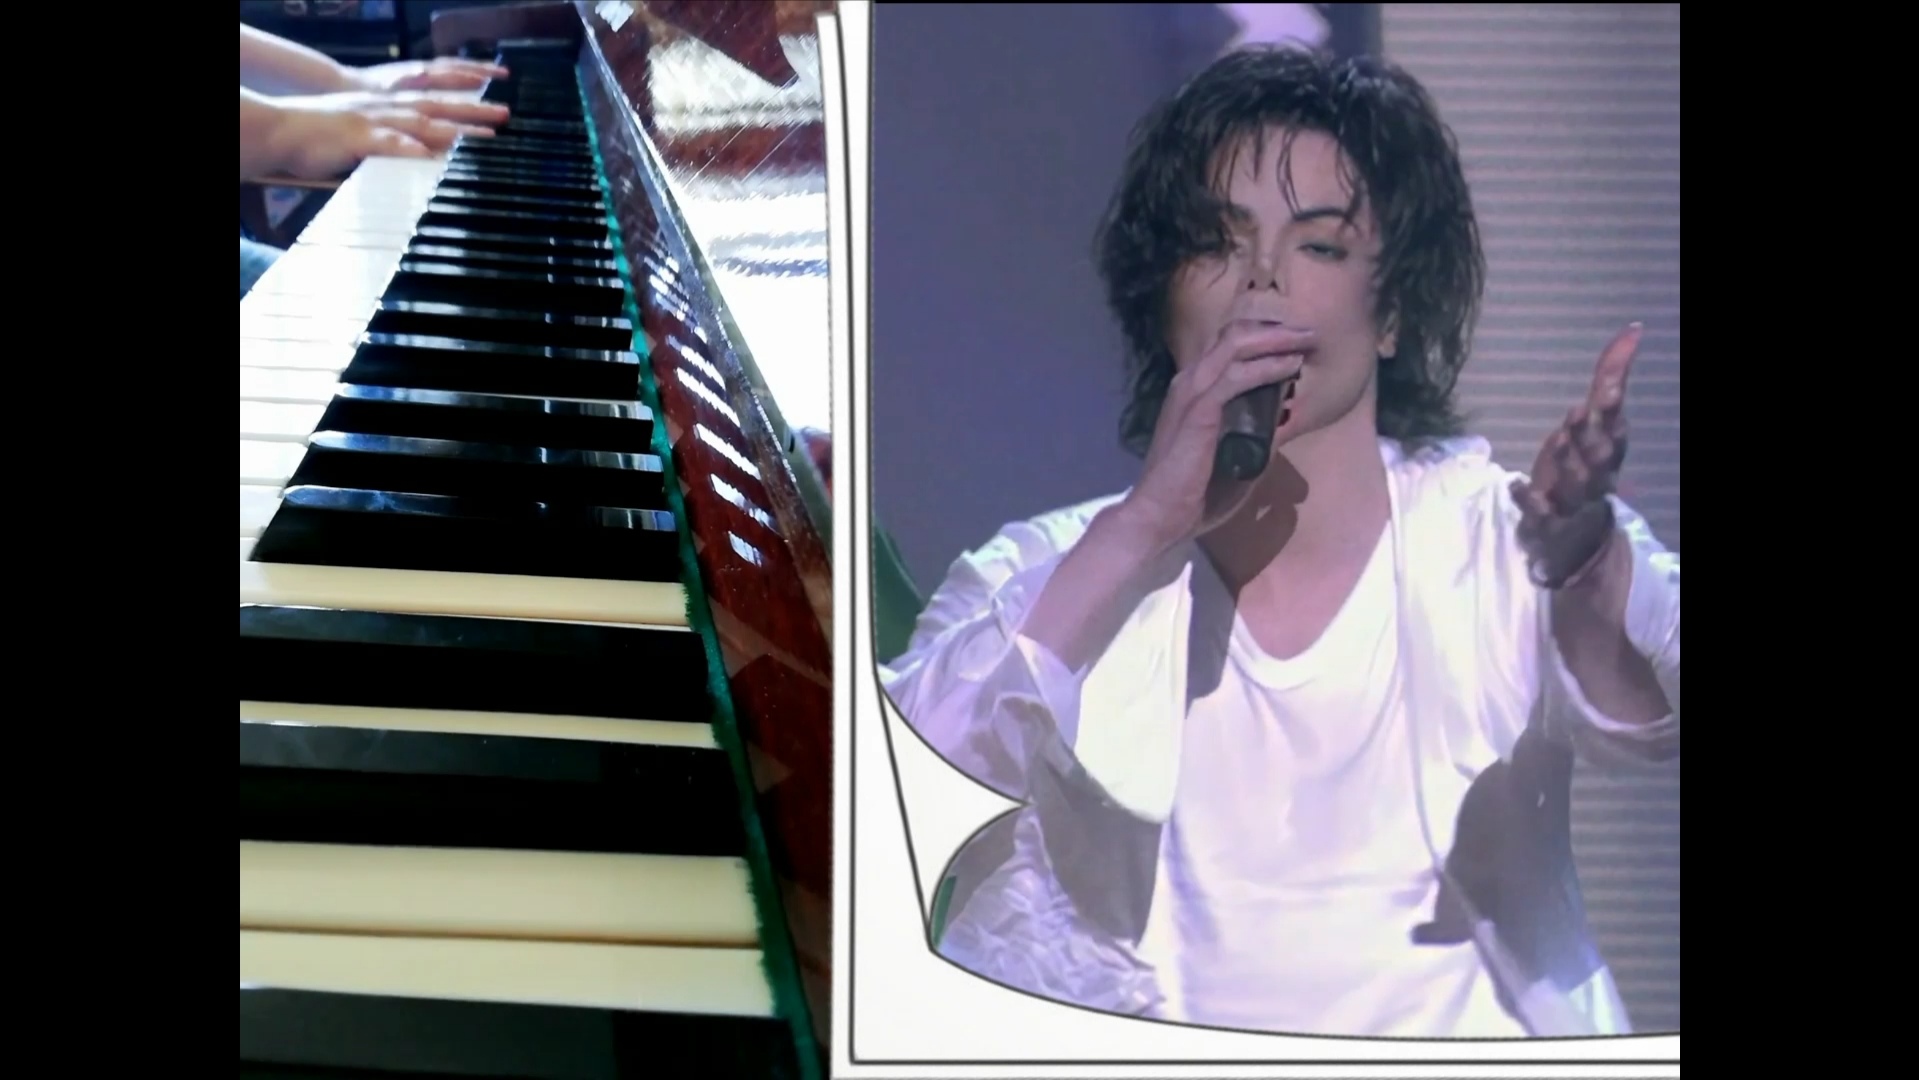 Michael Jackson - I'll Be There - первое и последнее исполнение (вокал), ДВОЙНАЯ кавер-версия рояль